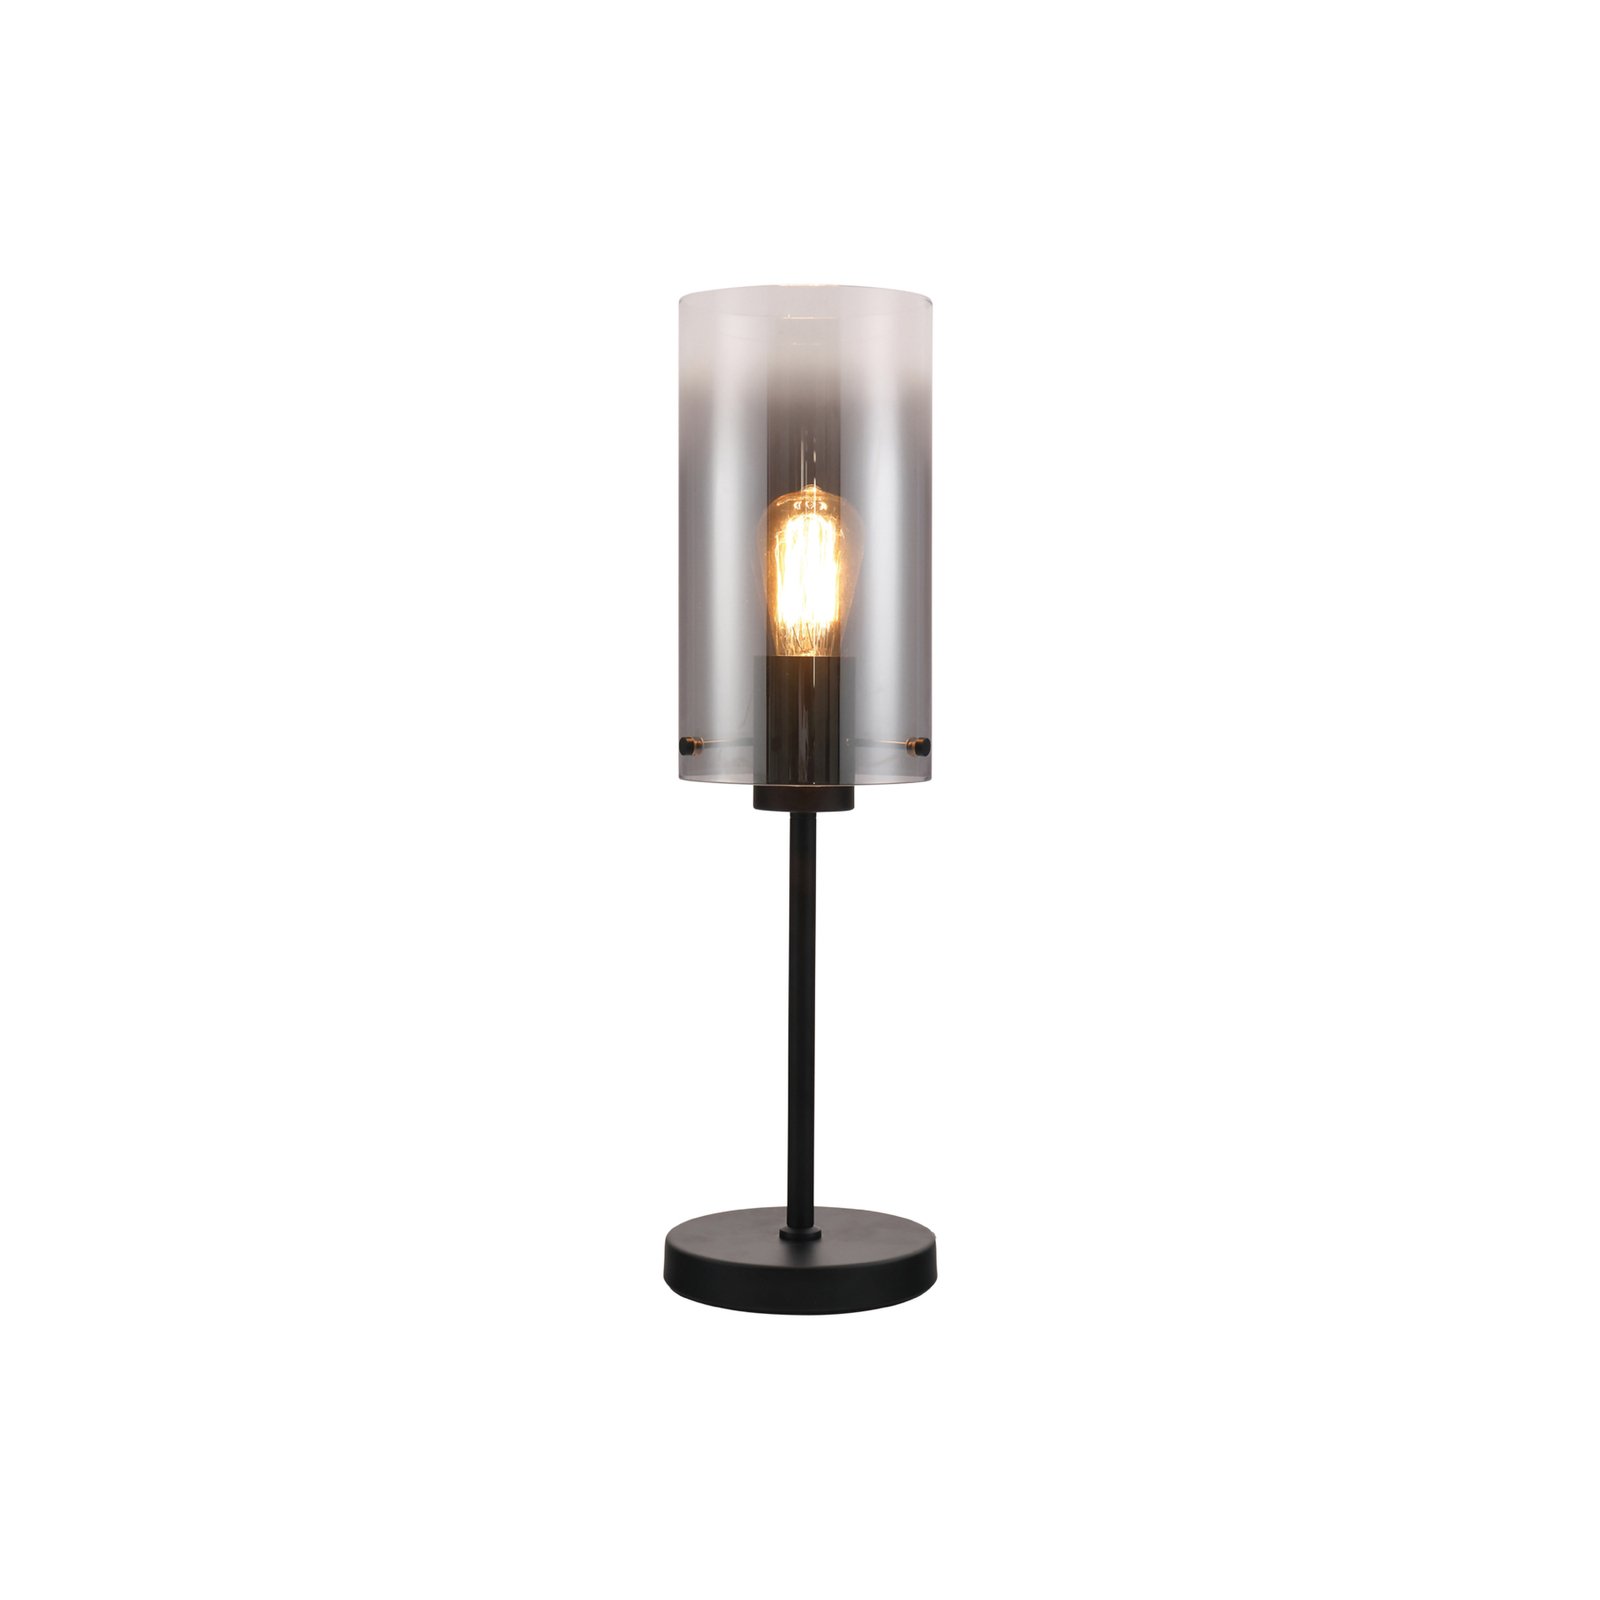 Tischlampe Ventotto, schwarz/rauch, Höhe 57 cm, Metall/Glas